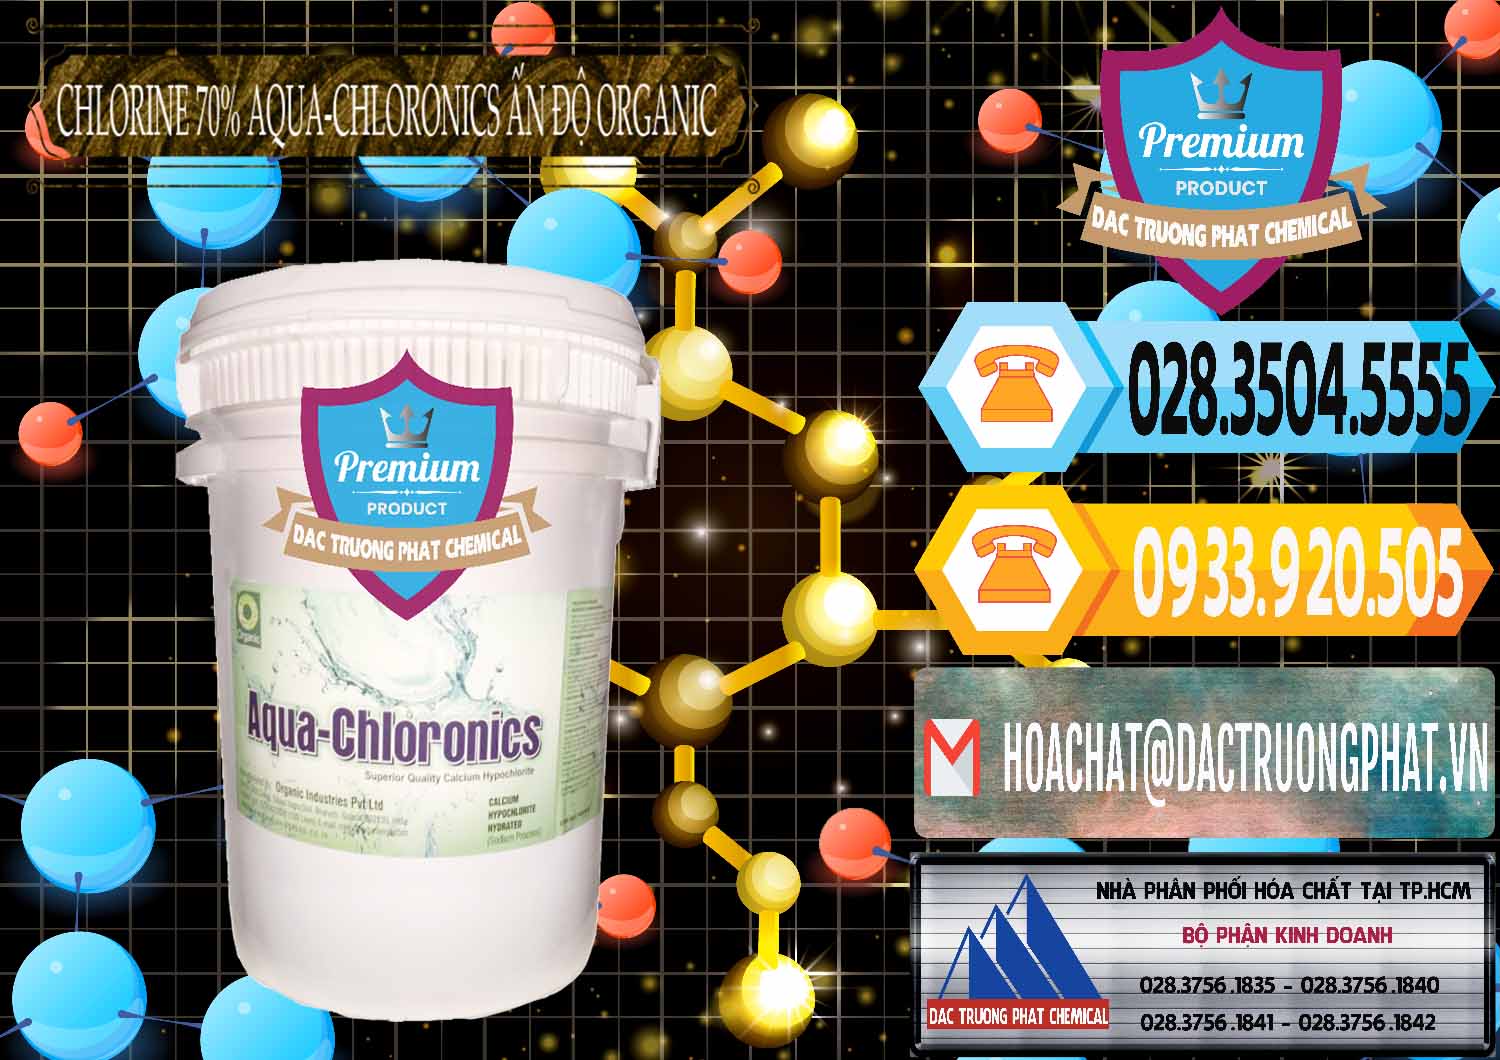 Nơi bán _ phân phối Chlorine – Clorin 70% Aqua-Chloronics Ấn Độ Organic India - 0211 - Cty chuyên nhập khẩu ( cung cấp ) hóa chất tại TP.HCM - hoachattayrua.net